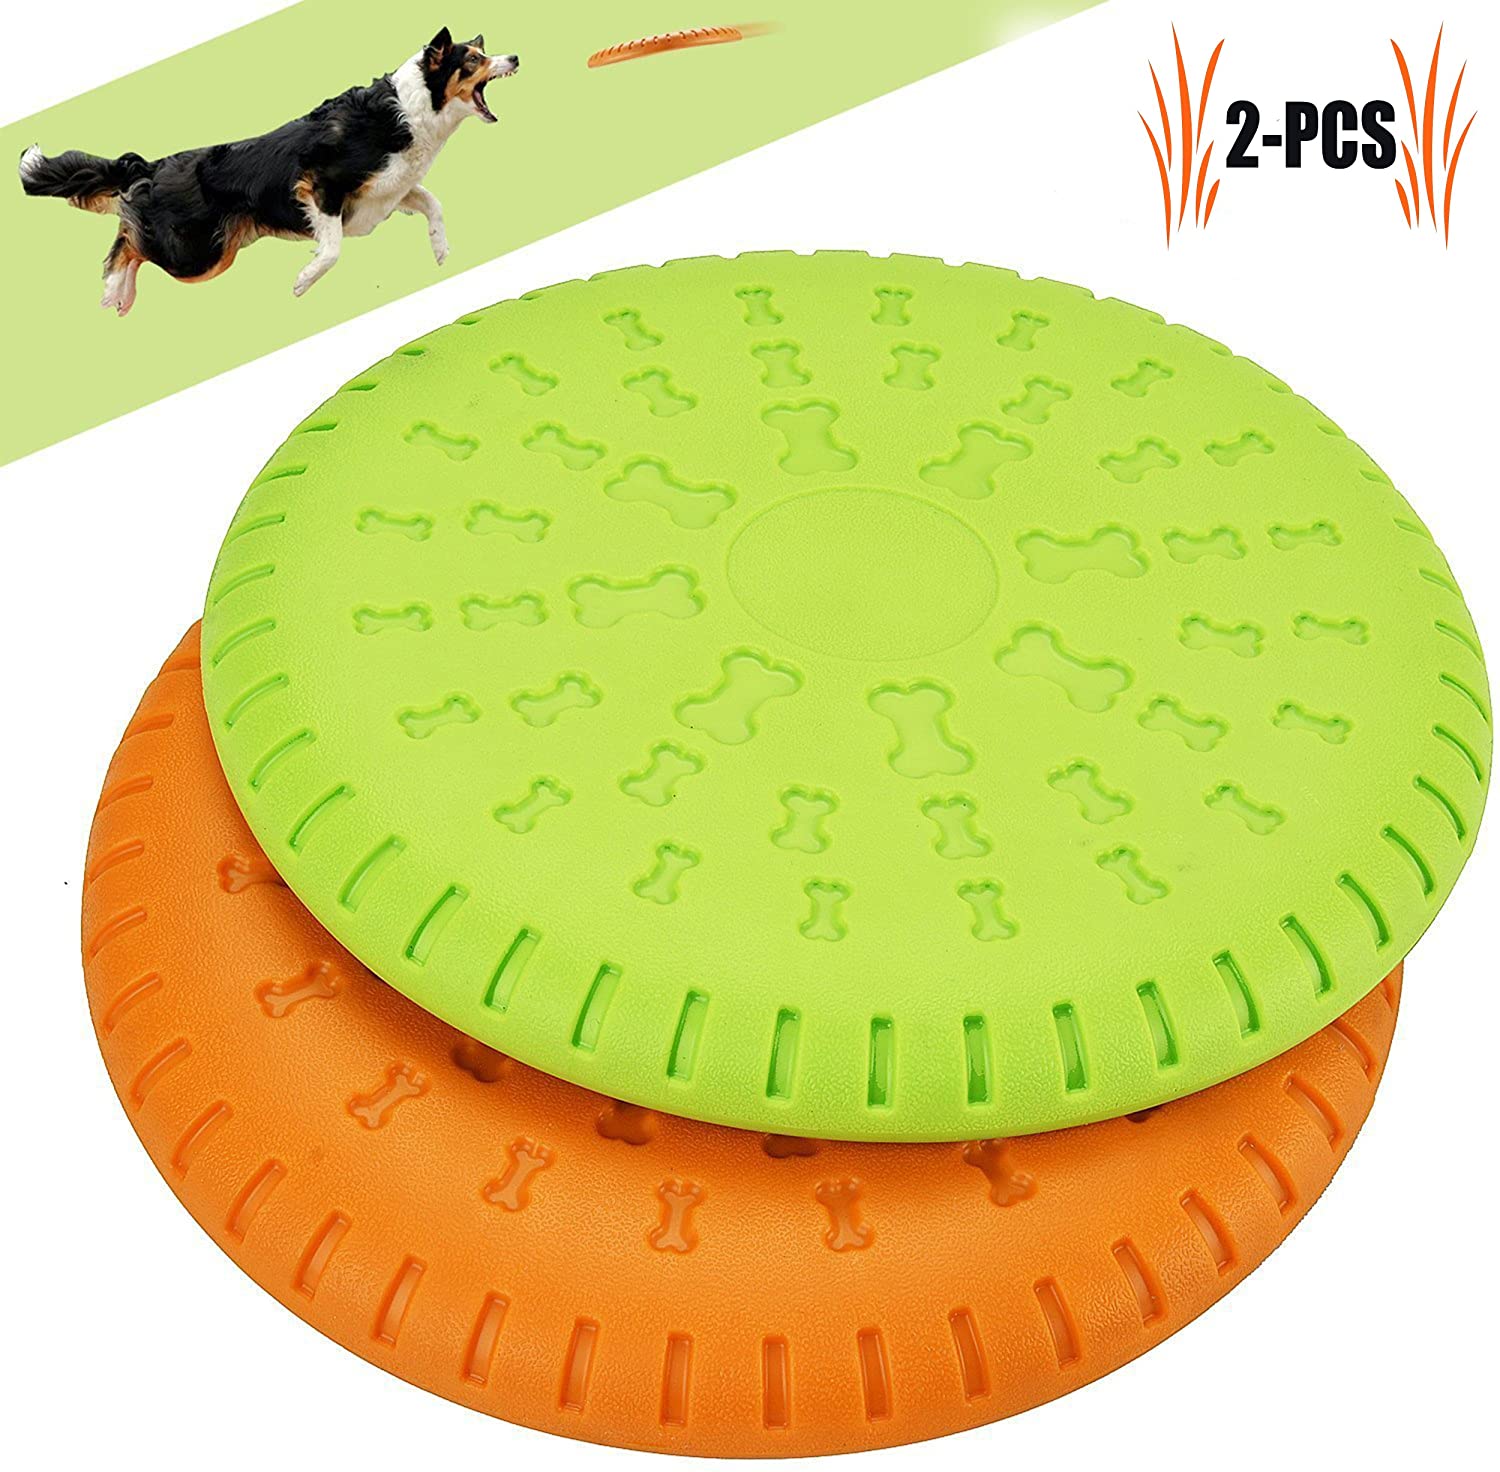  Legendog Disco Perro, 2 Pcs Durable Perro Flying Disco Material ABS Juguetes para Perros Juguetes de Entrenamiento para Perros(Compáralo para Masticar, Entrenamiento 